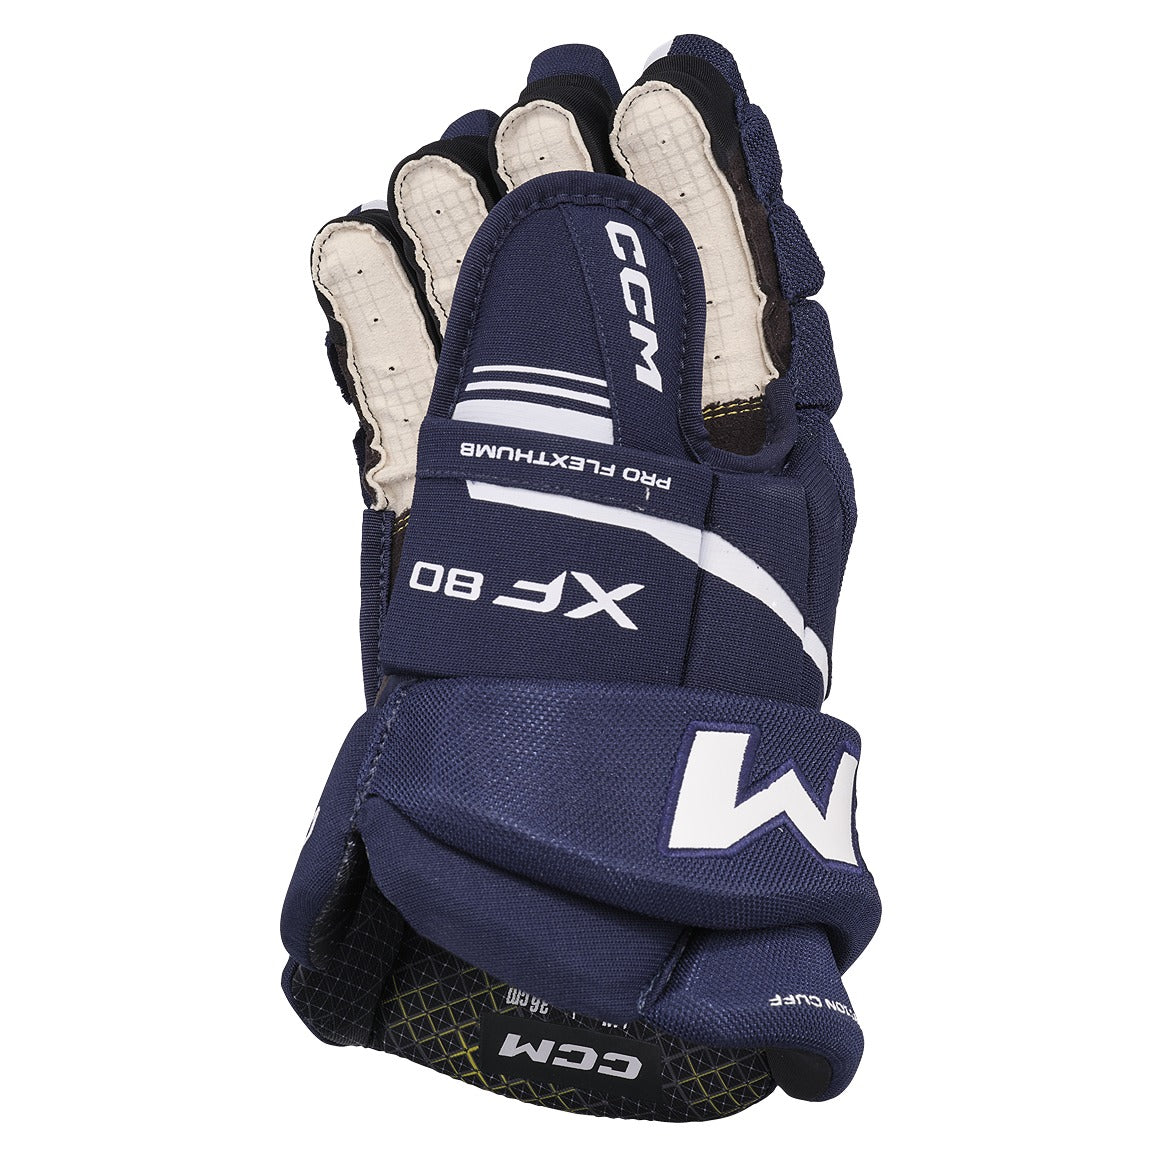 CCM Tacks XF80 Hockey Gloves - Junior